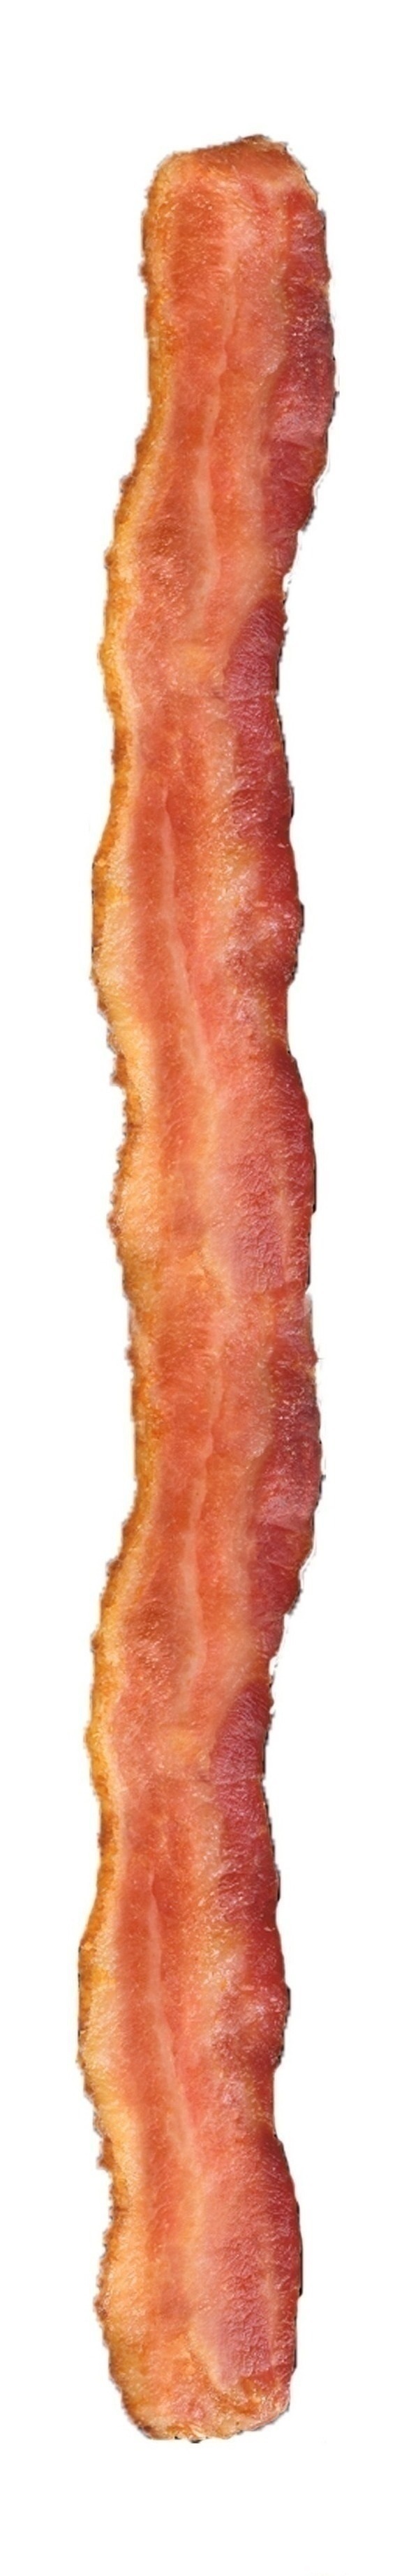 bacon strips - Google Search